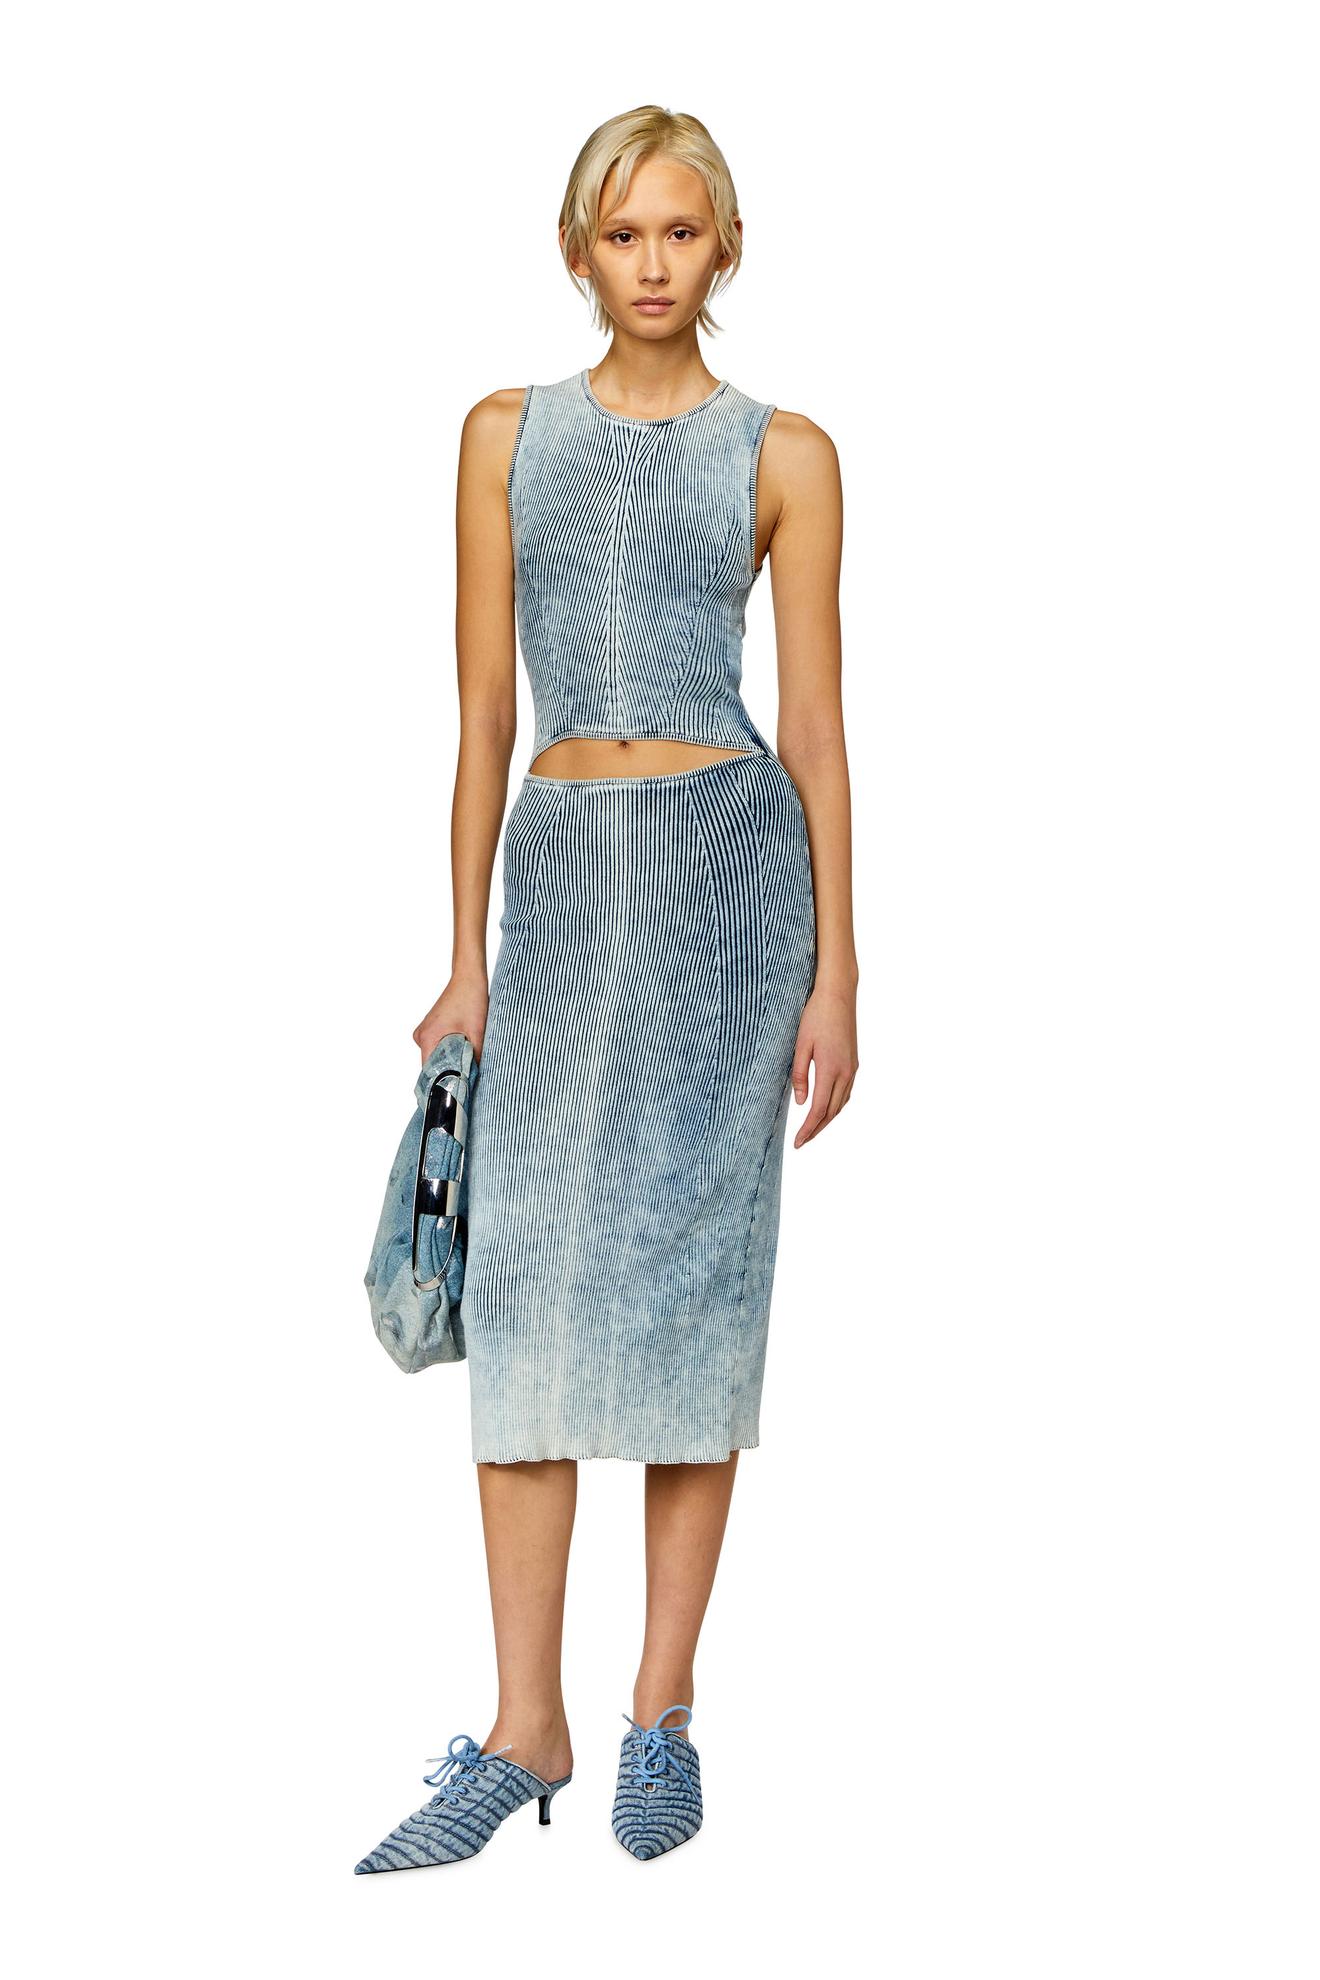 Προσφορά Cut-out midi dress in indigo cotton knit για 509€ σε DIESEL